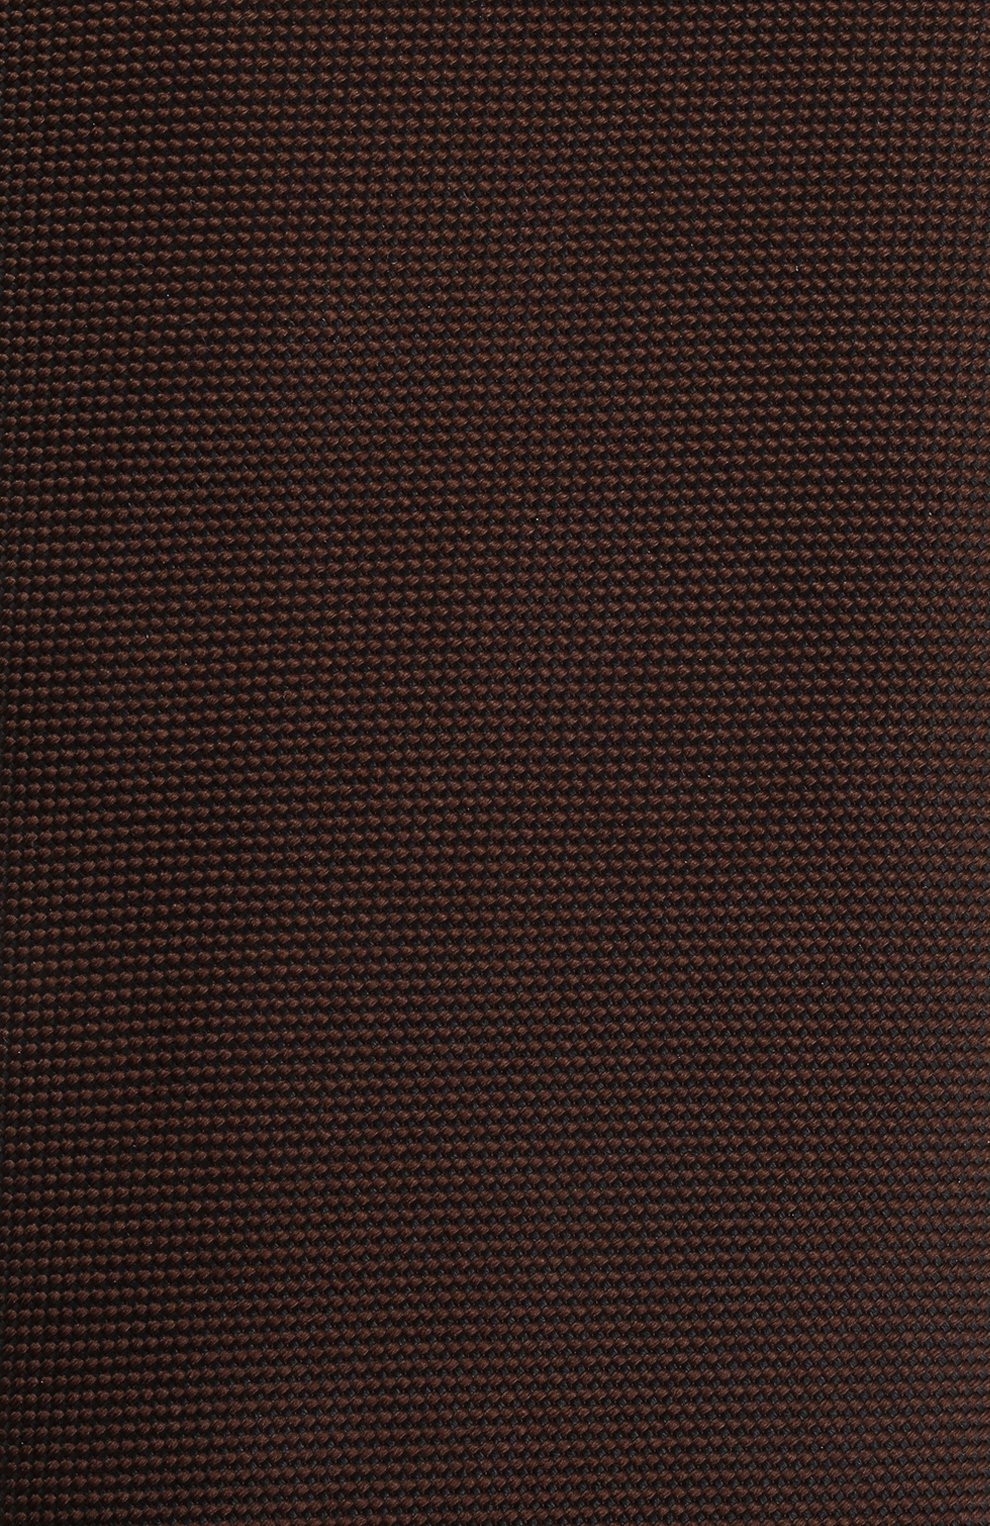 Мужской шелковый галстук ETON темно-коричневого цвета, арт. A000 31550 | Фото 4 (Материал: Текстиль, Шелк; Принт: Без принта)